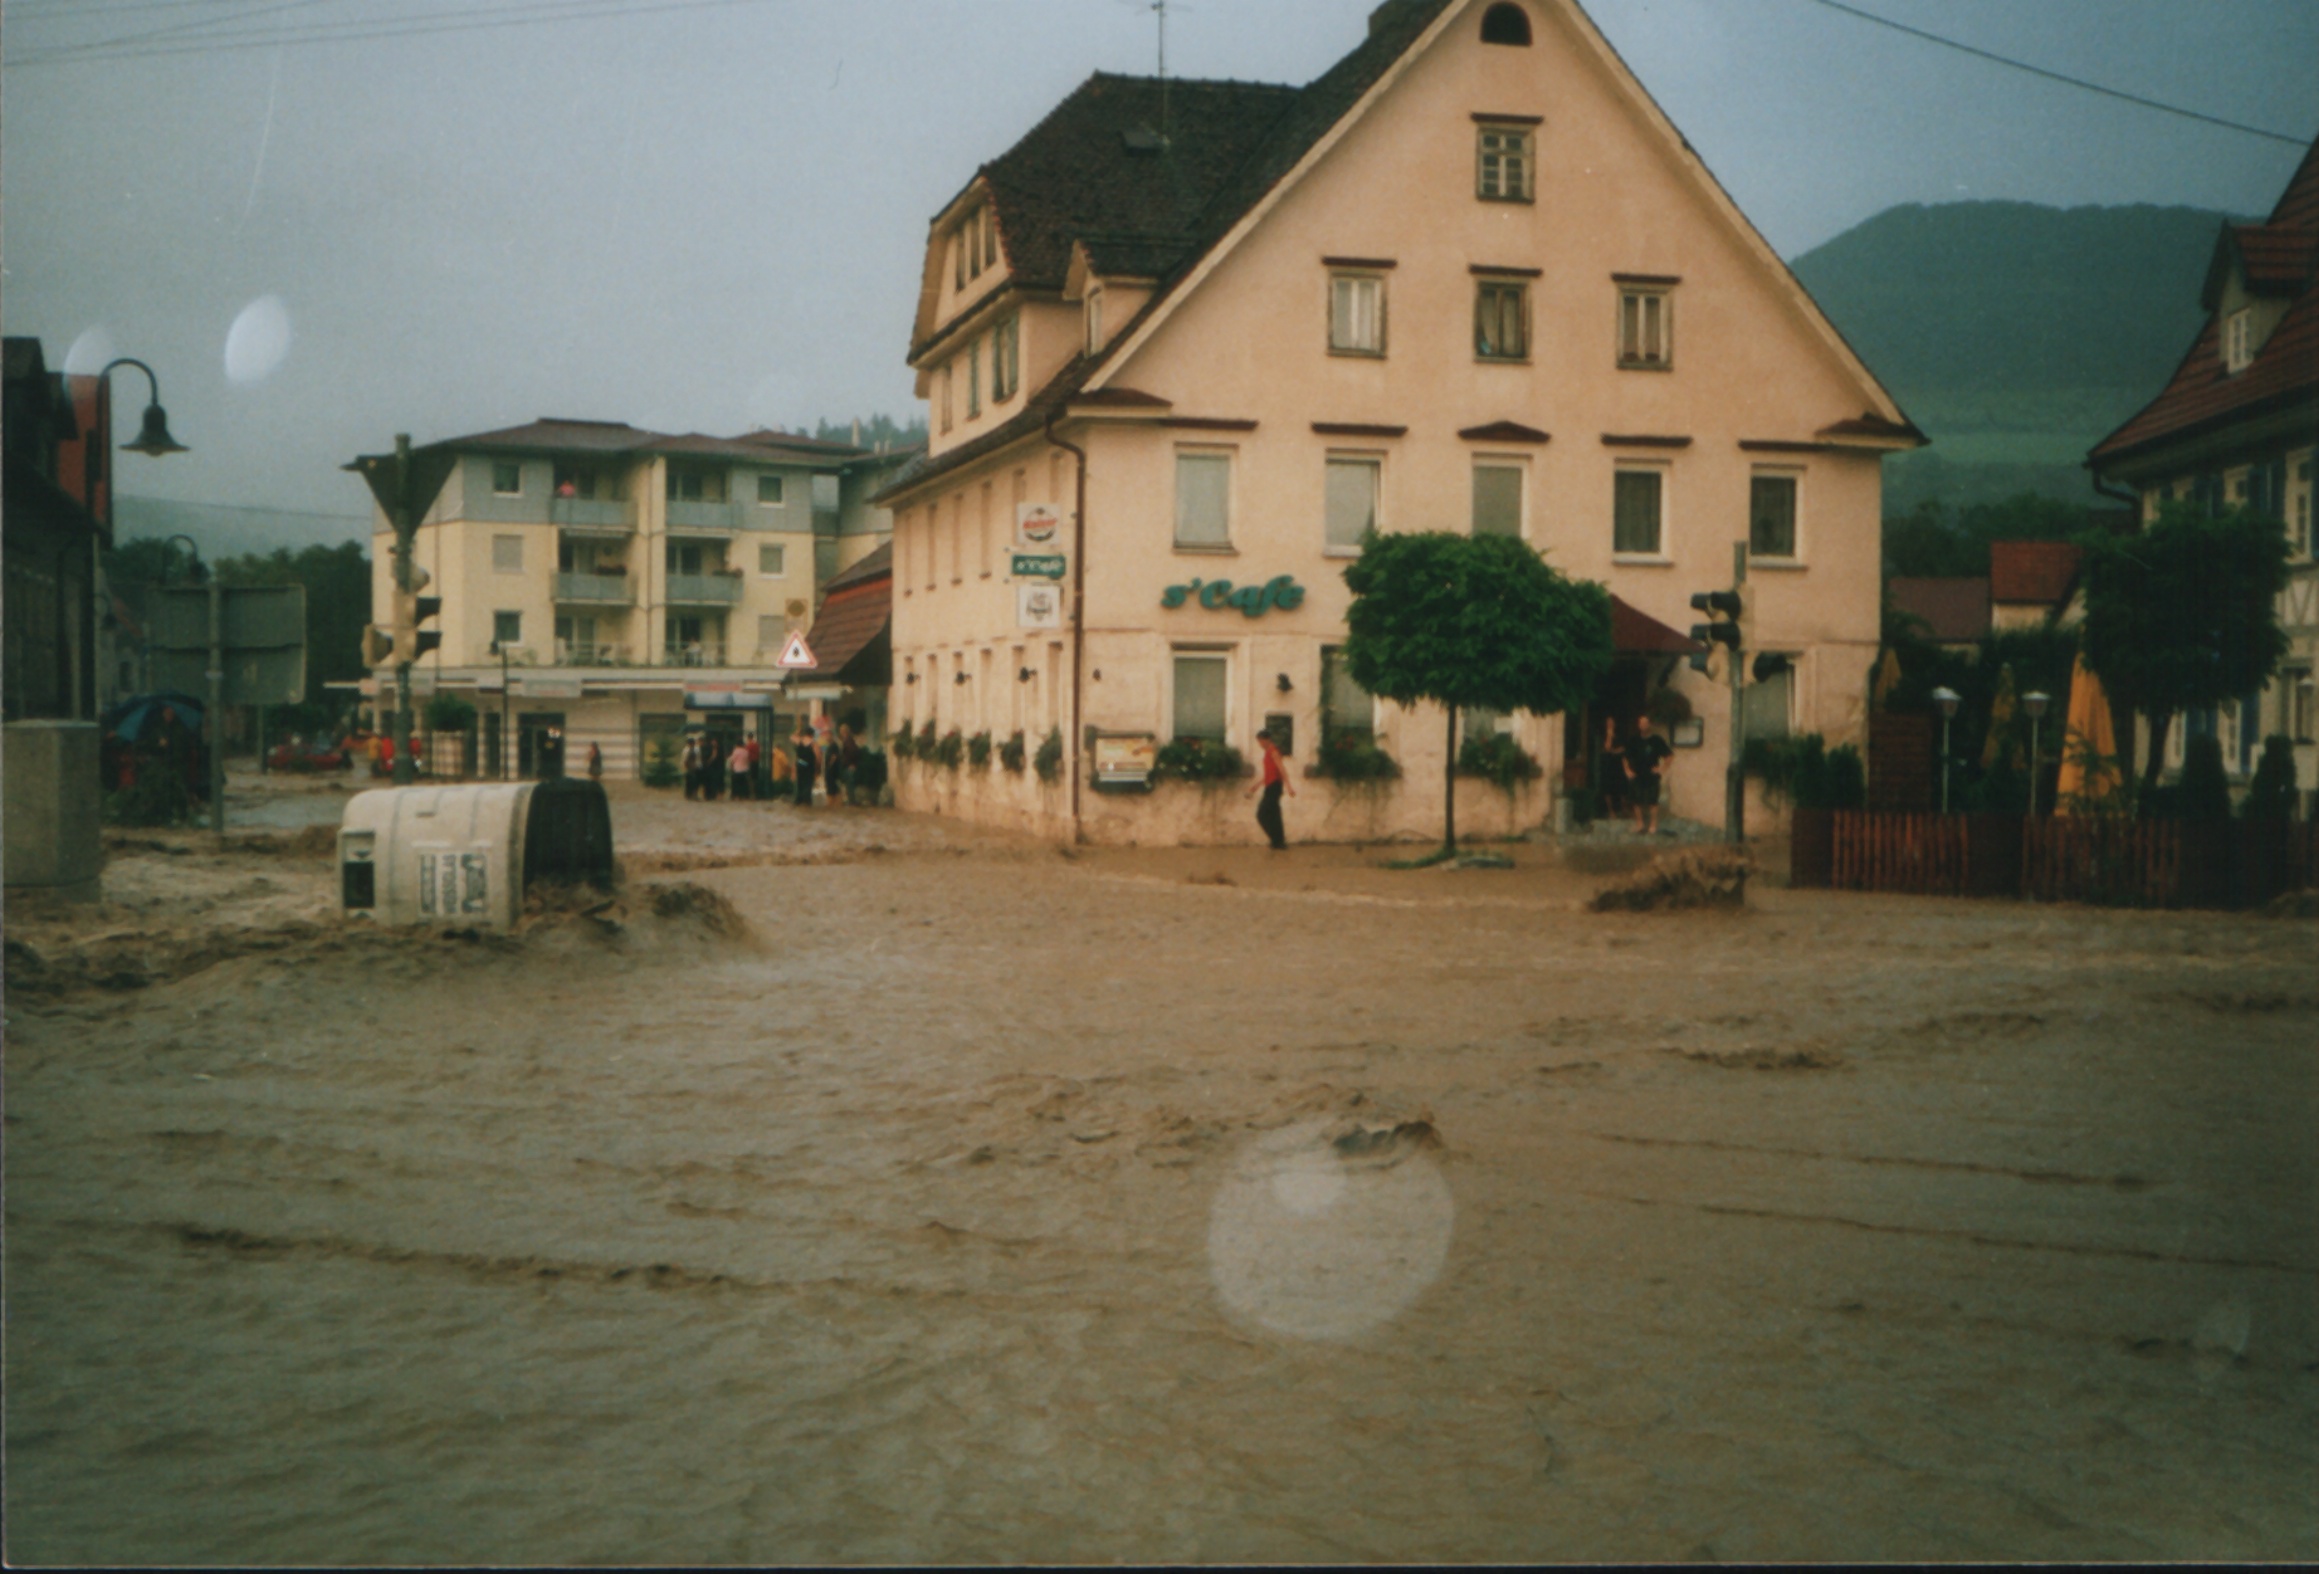  Hochwasser 2002 